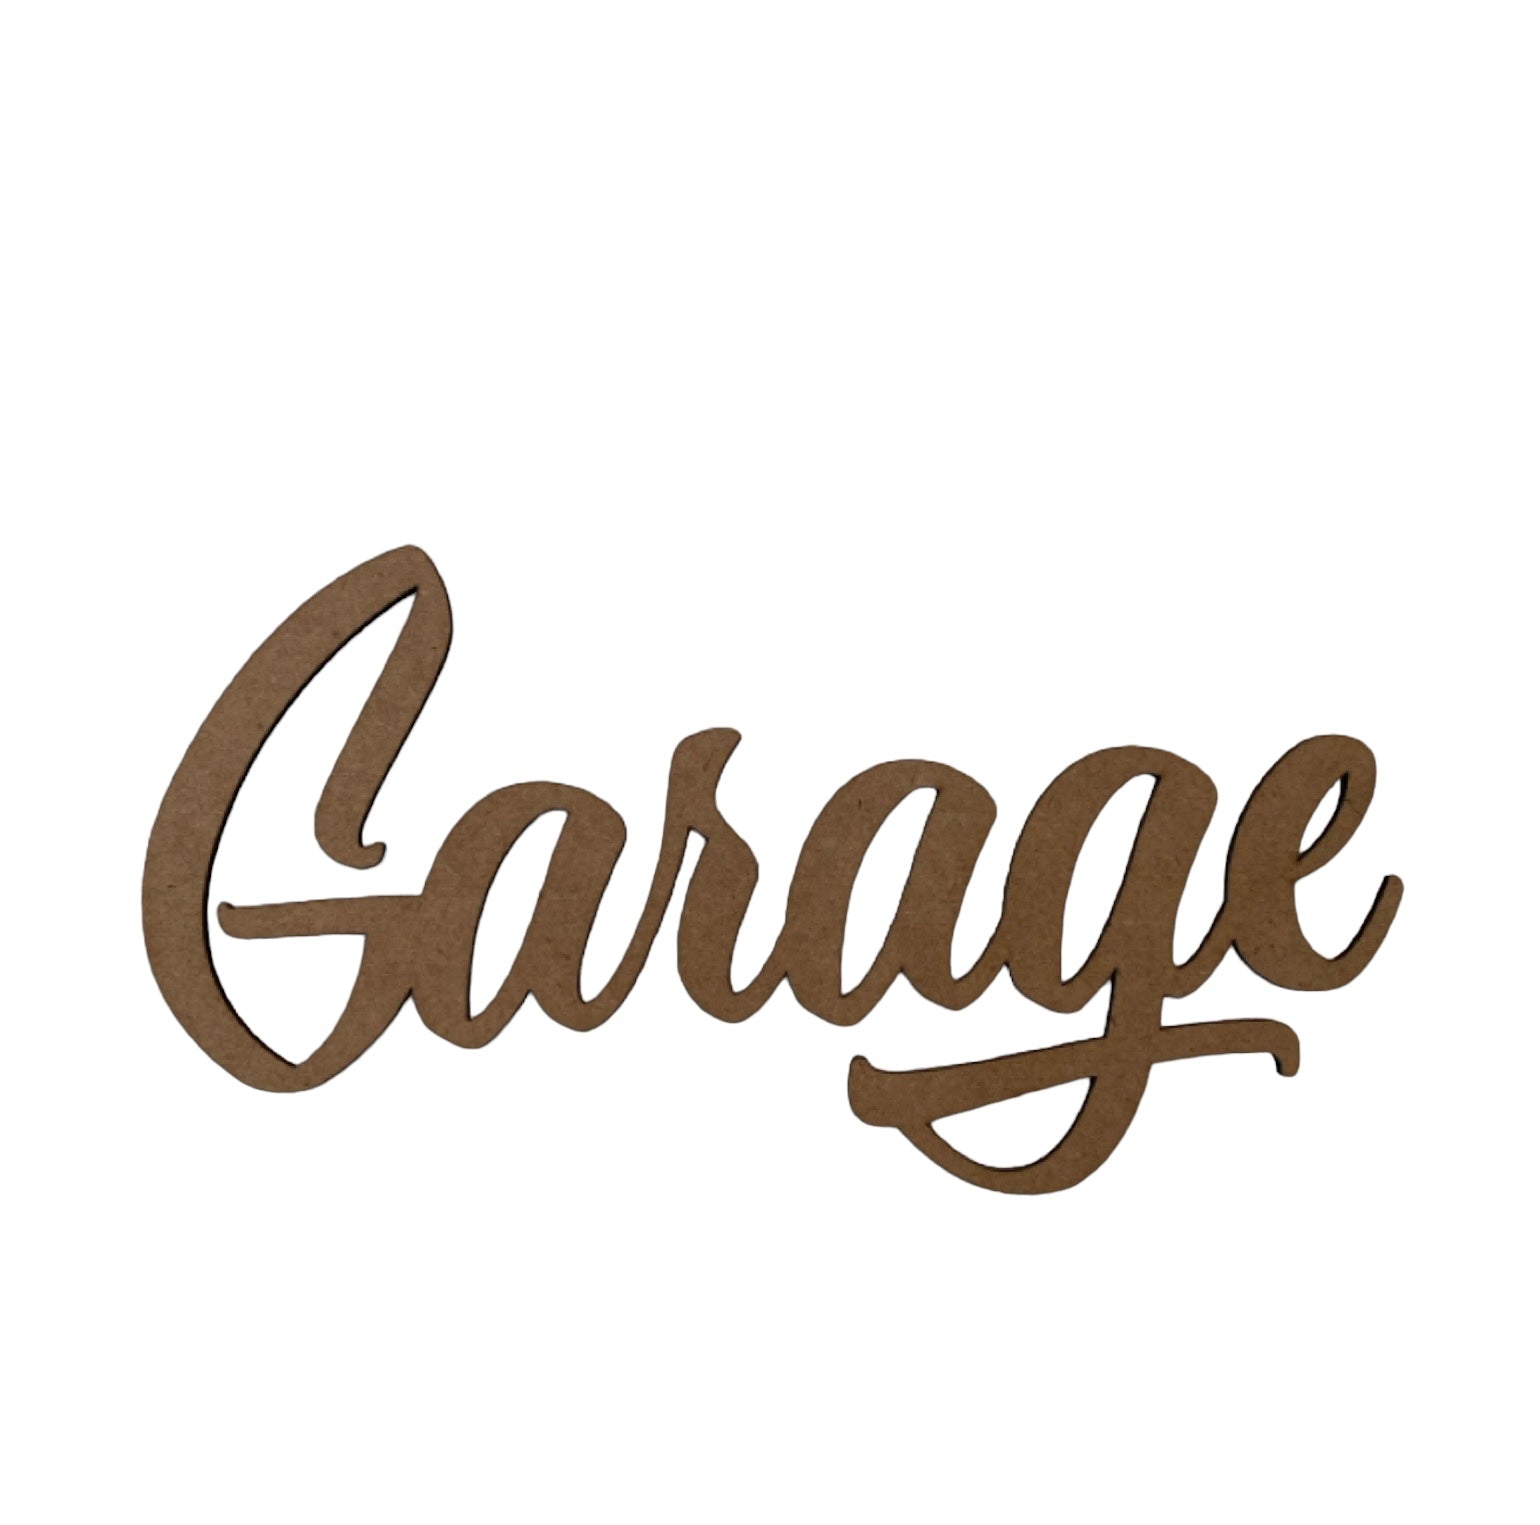 Garage Door Word Sign MDF DIY Wooden - The Renmy Store Homewares & Gifts 